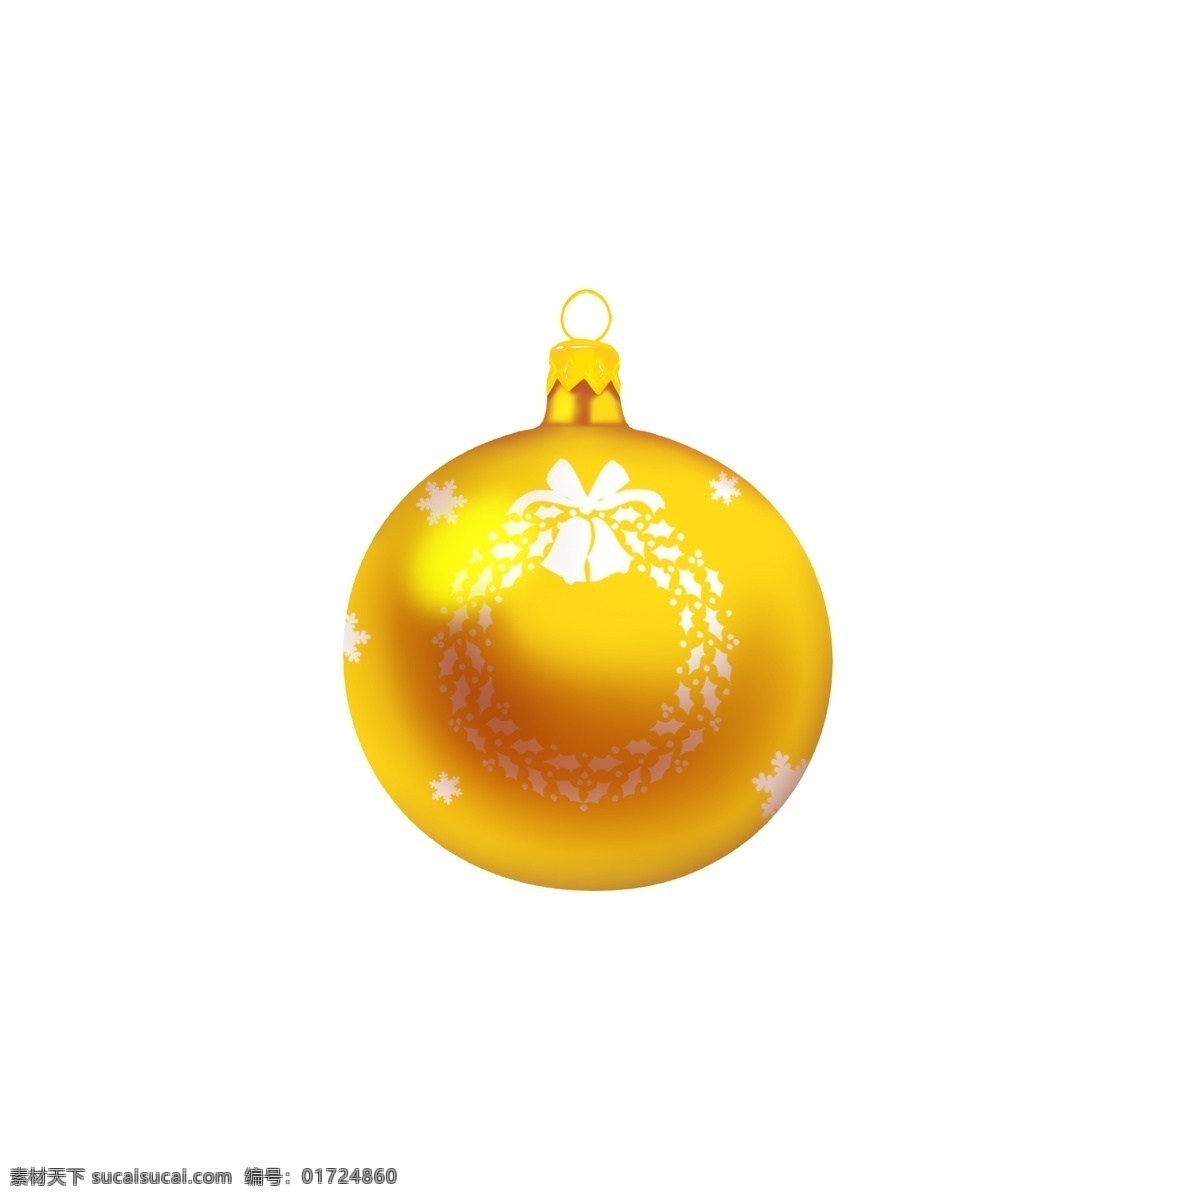 手绘 圣诞 装饰 球 金色 黄色 花环 雪花 创意 商用 圣诞节 可爱 手绘风 平安夜 铃铛 白色 配图 可商用 写实